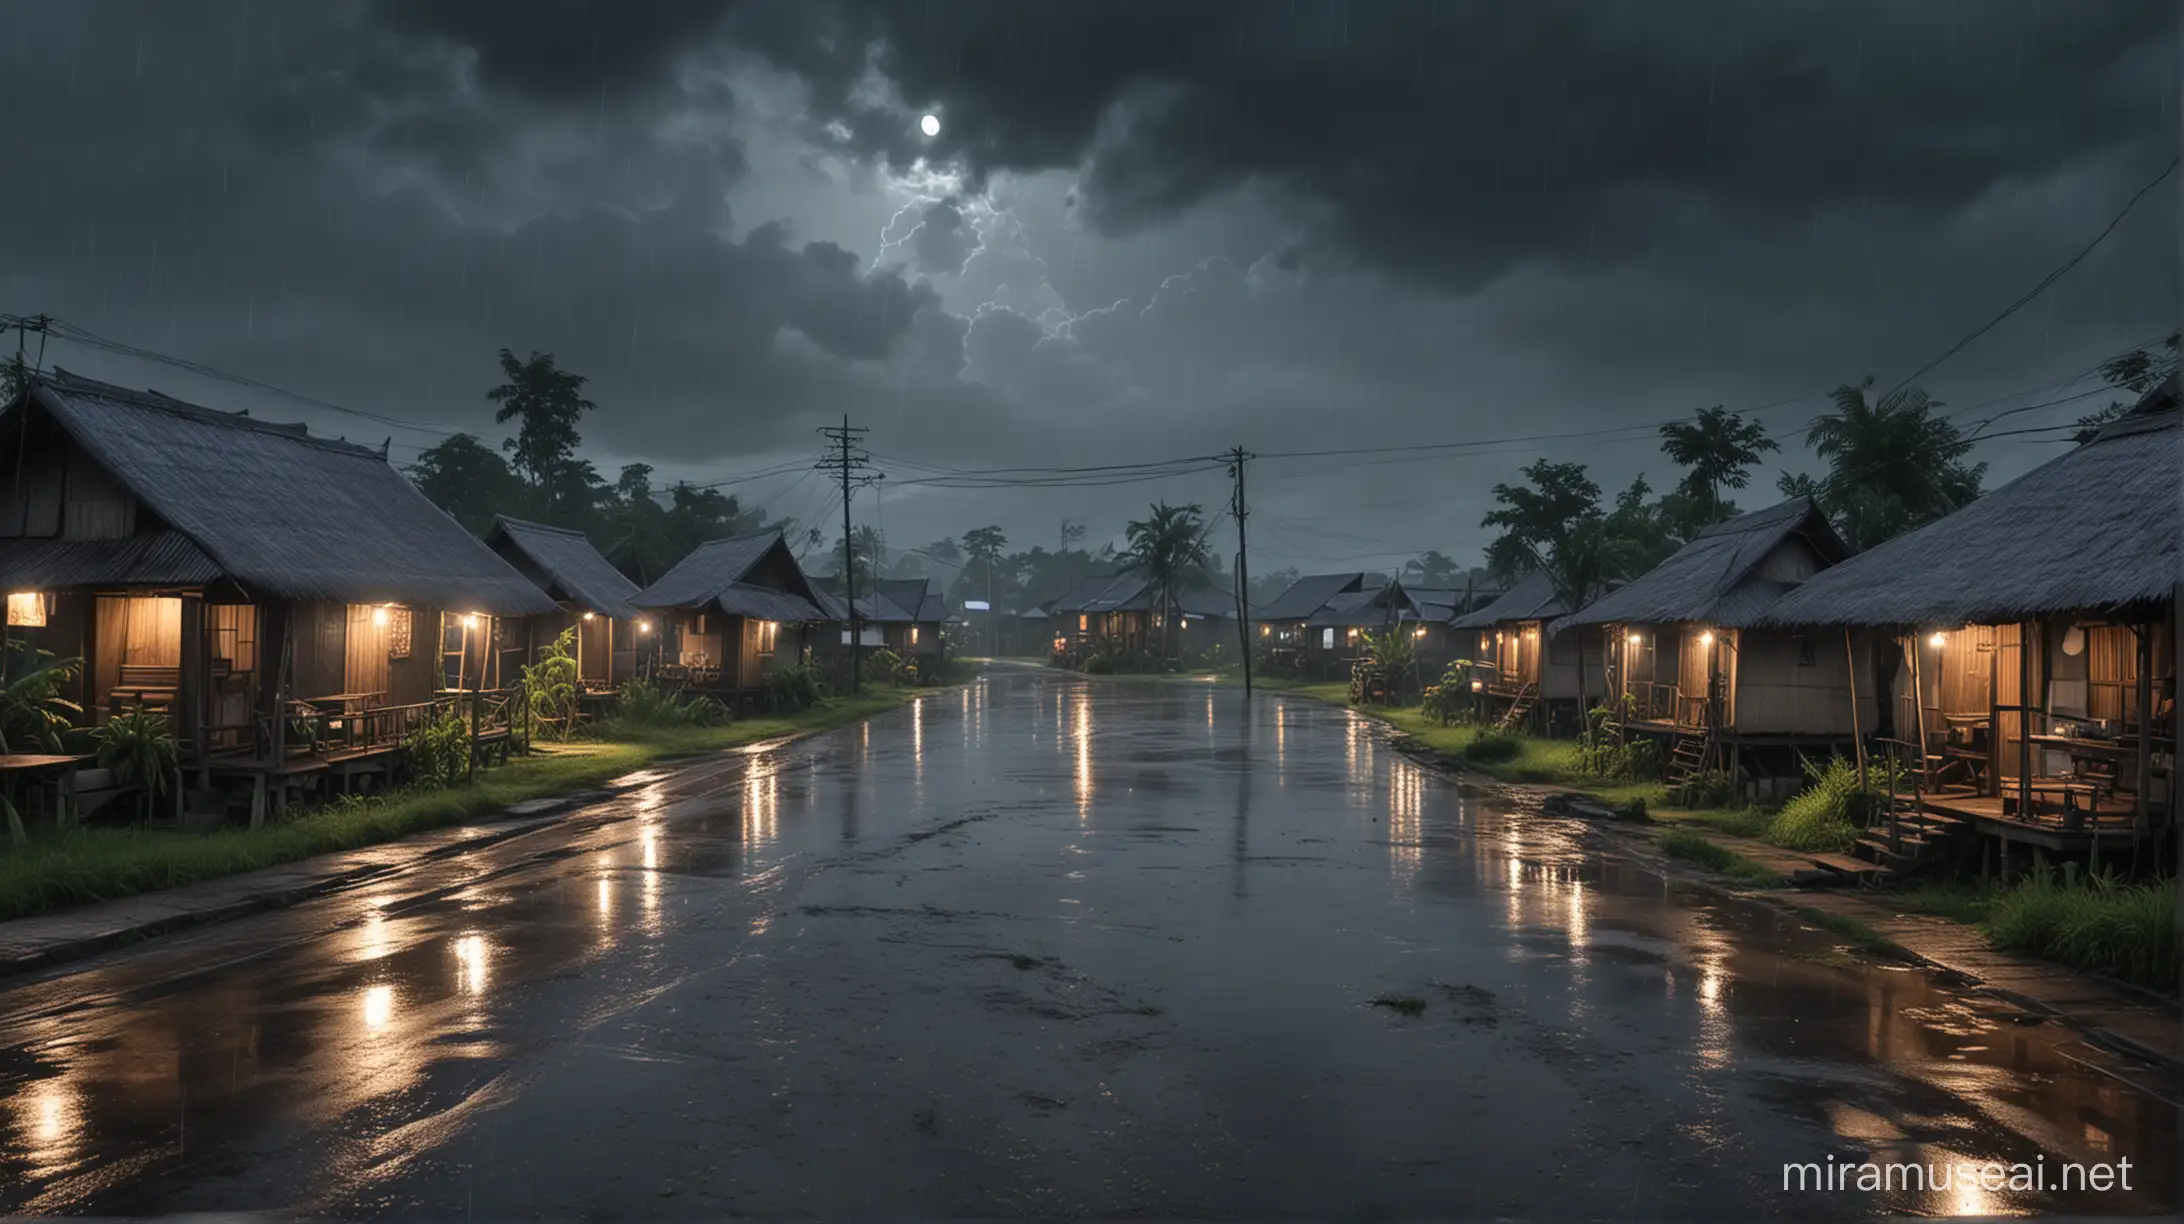 Sebuah desa di Indonesia, Suasana hujan malam hari. Tampak Langit mendung. Realistic 

